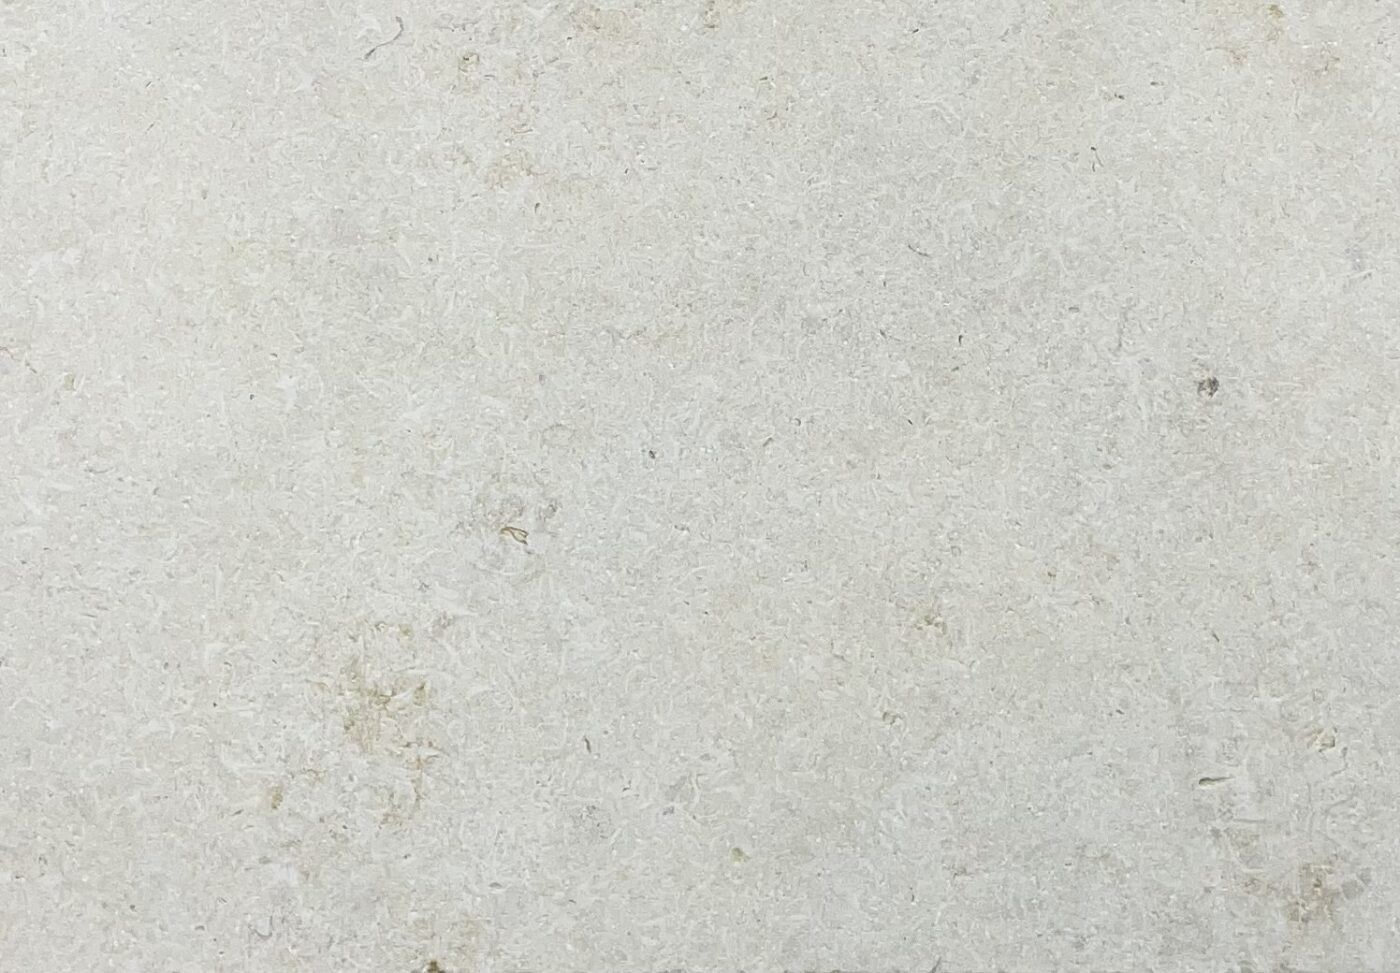 Crema Novelda Sandblasted & Tumbled Limestone Tiles & Pavers